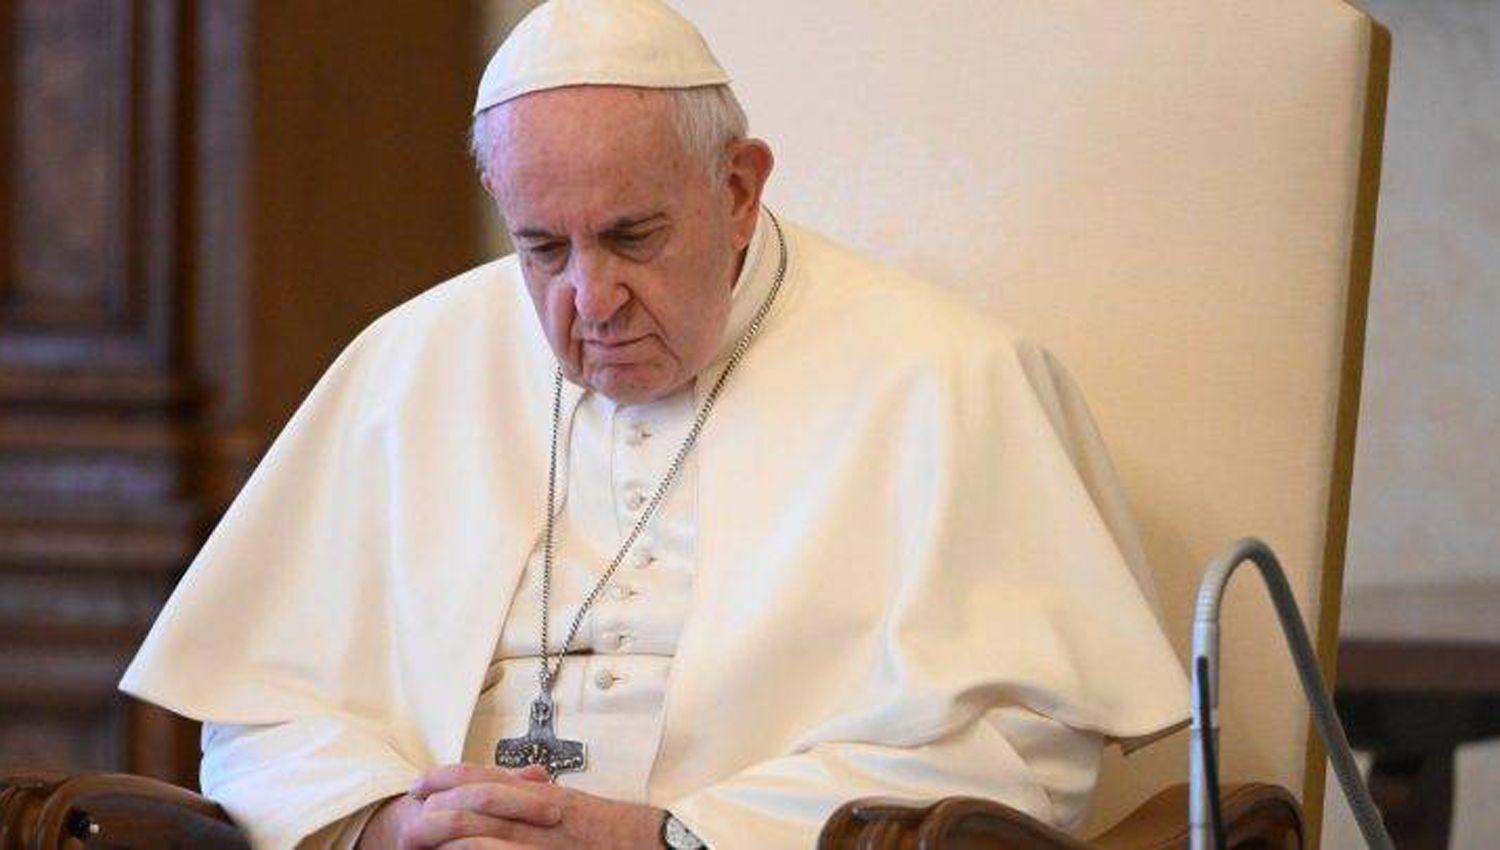 El Papa Francisco ordenoacute la expulsioacuten de un sacerdote acusado de abuso sexual en Ushuaia